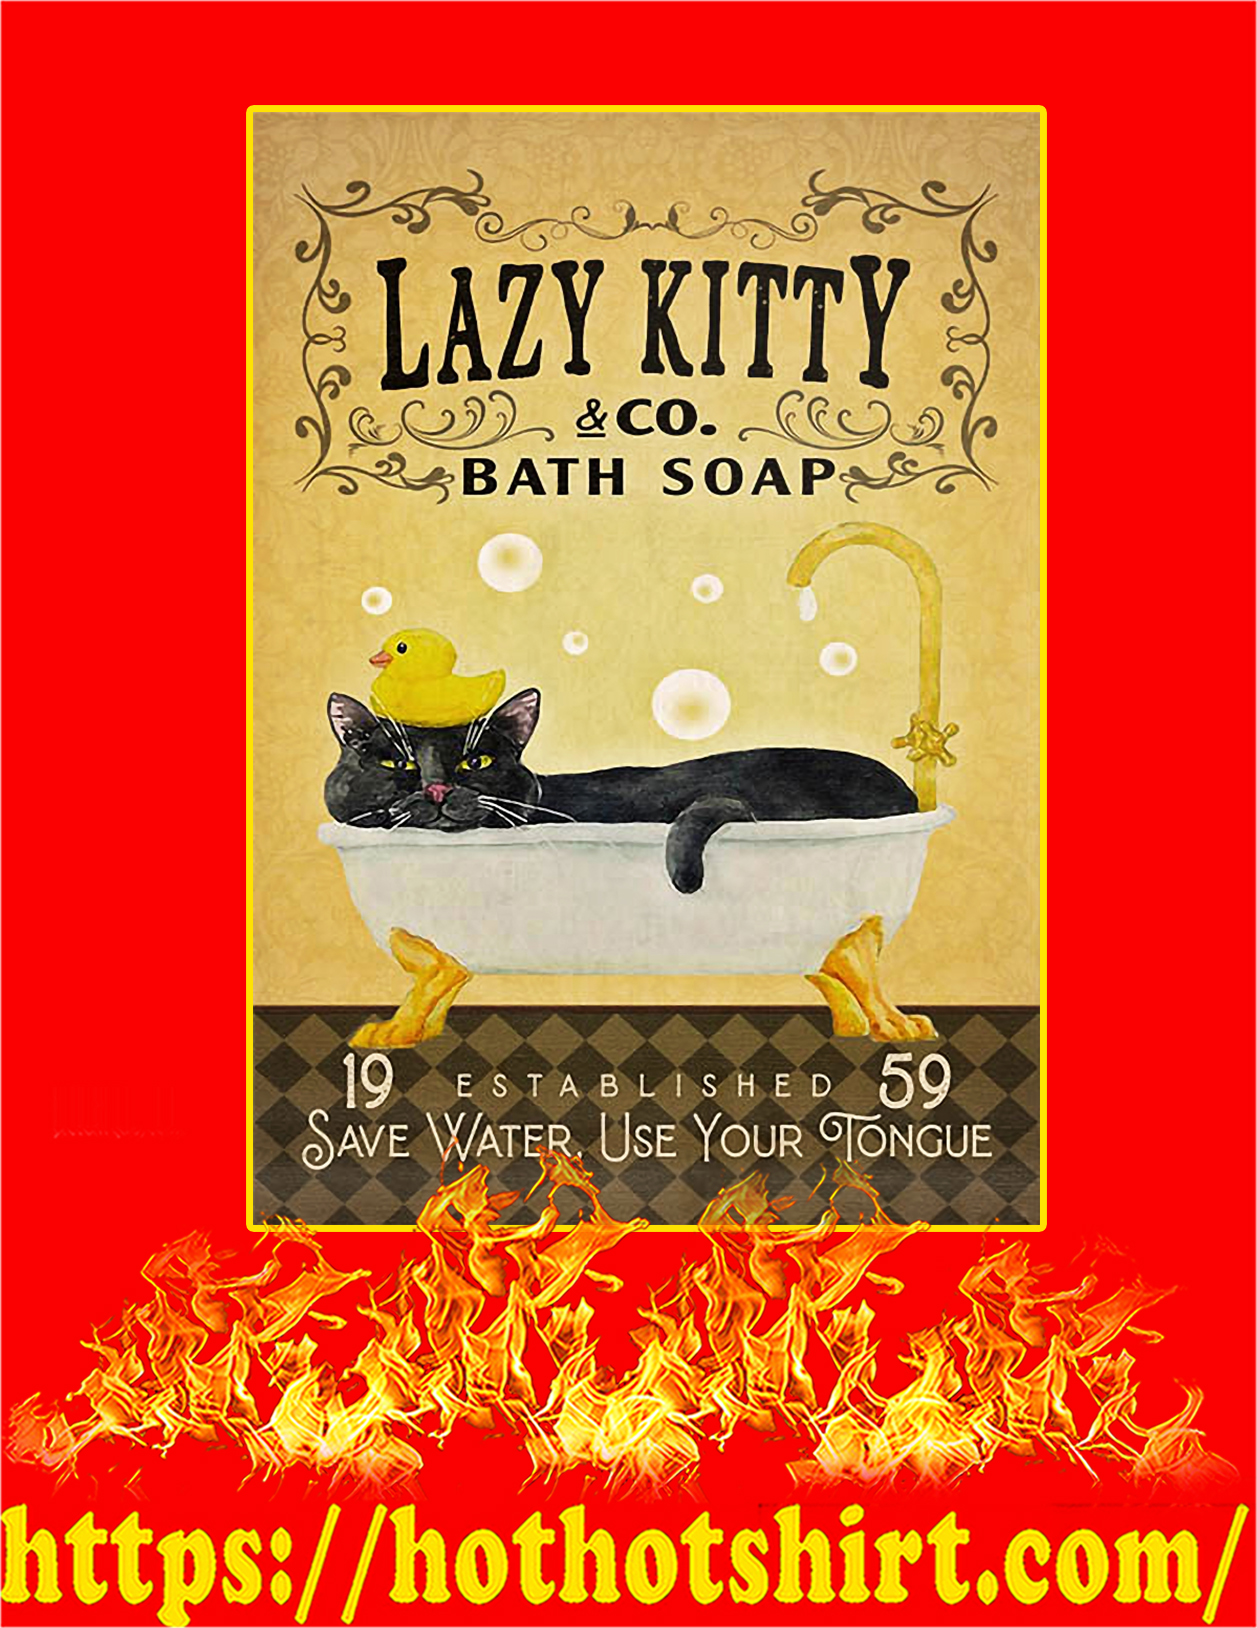 Bath soap company lazy kitty poster